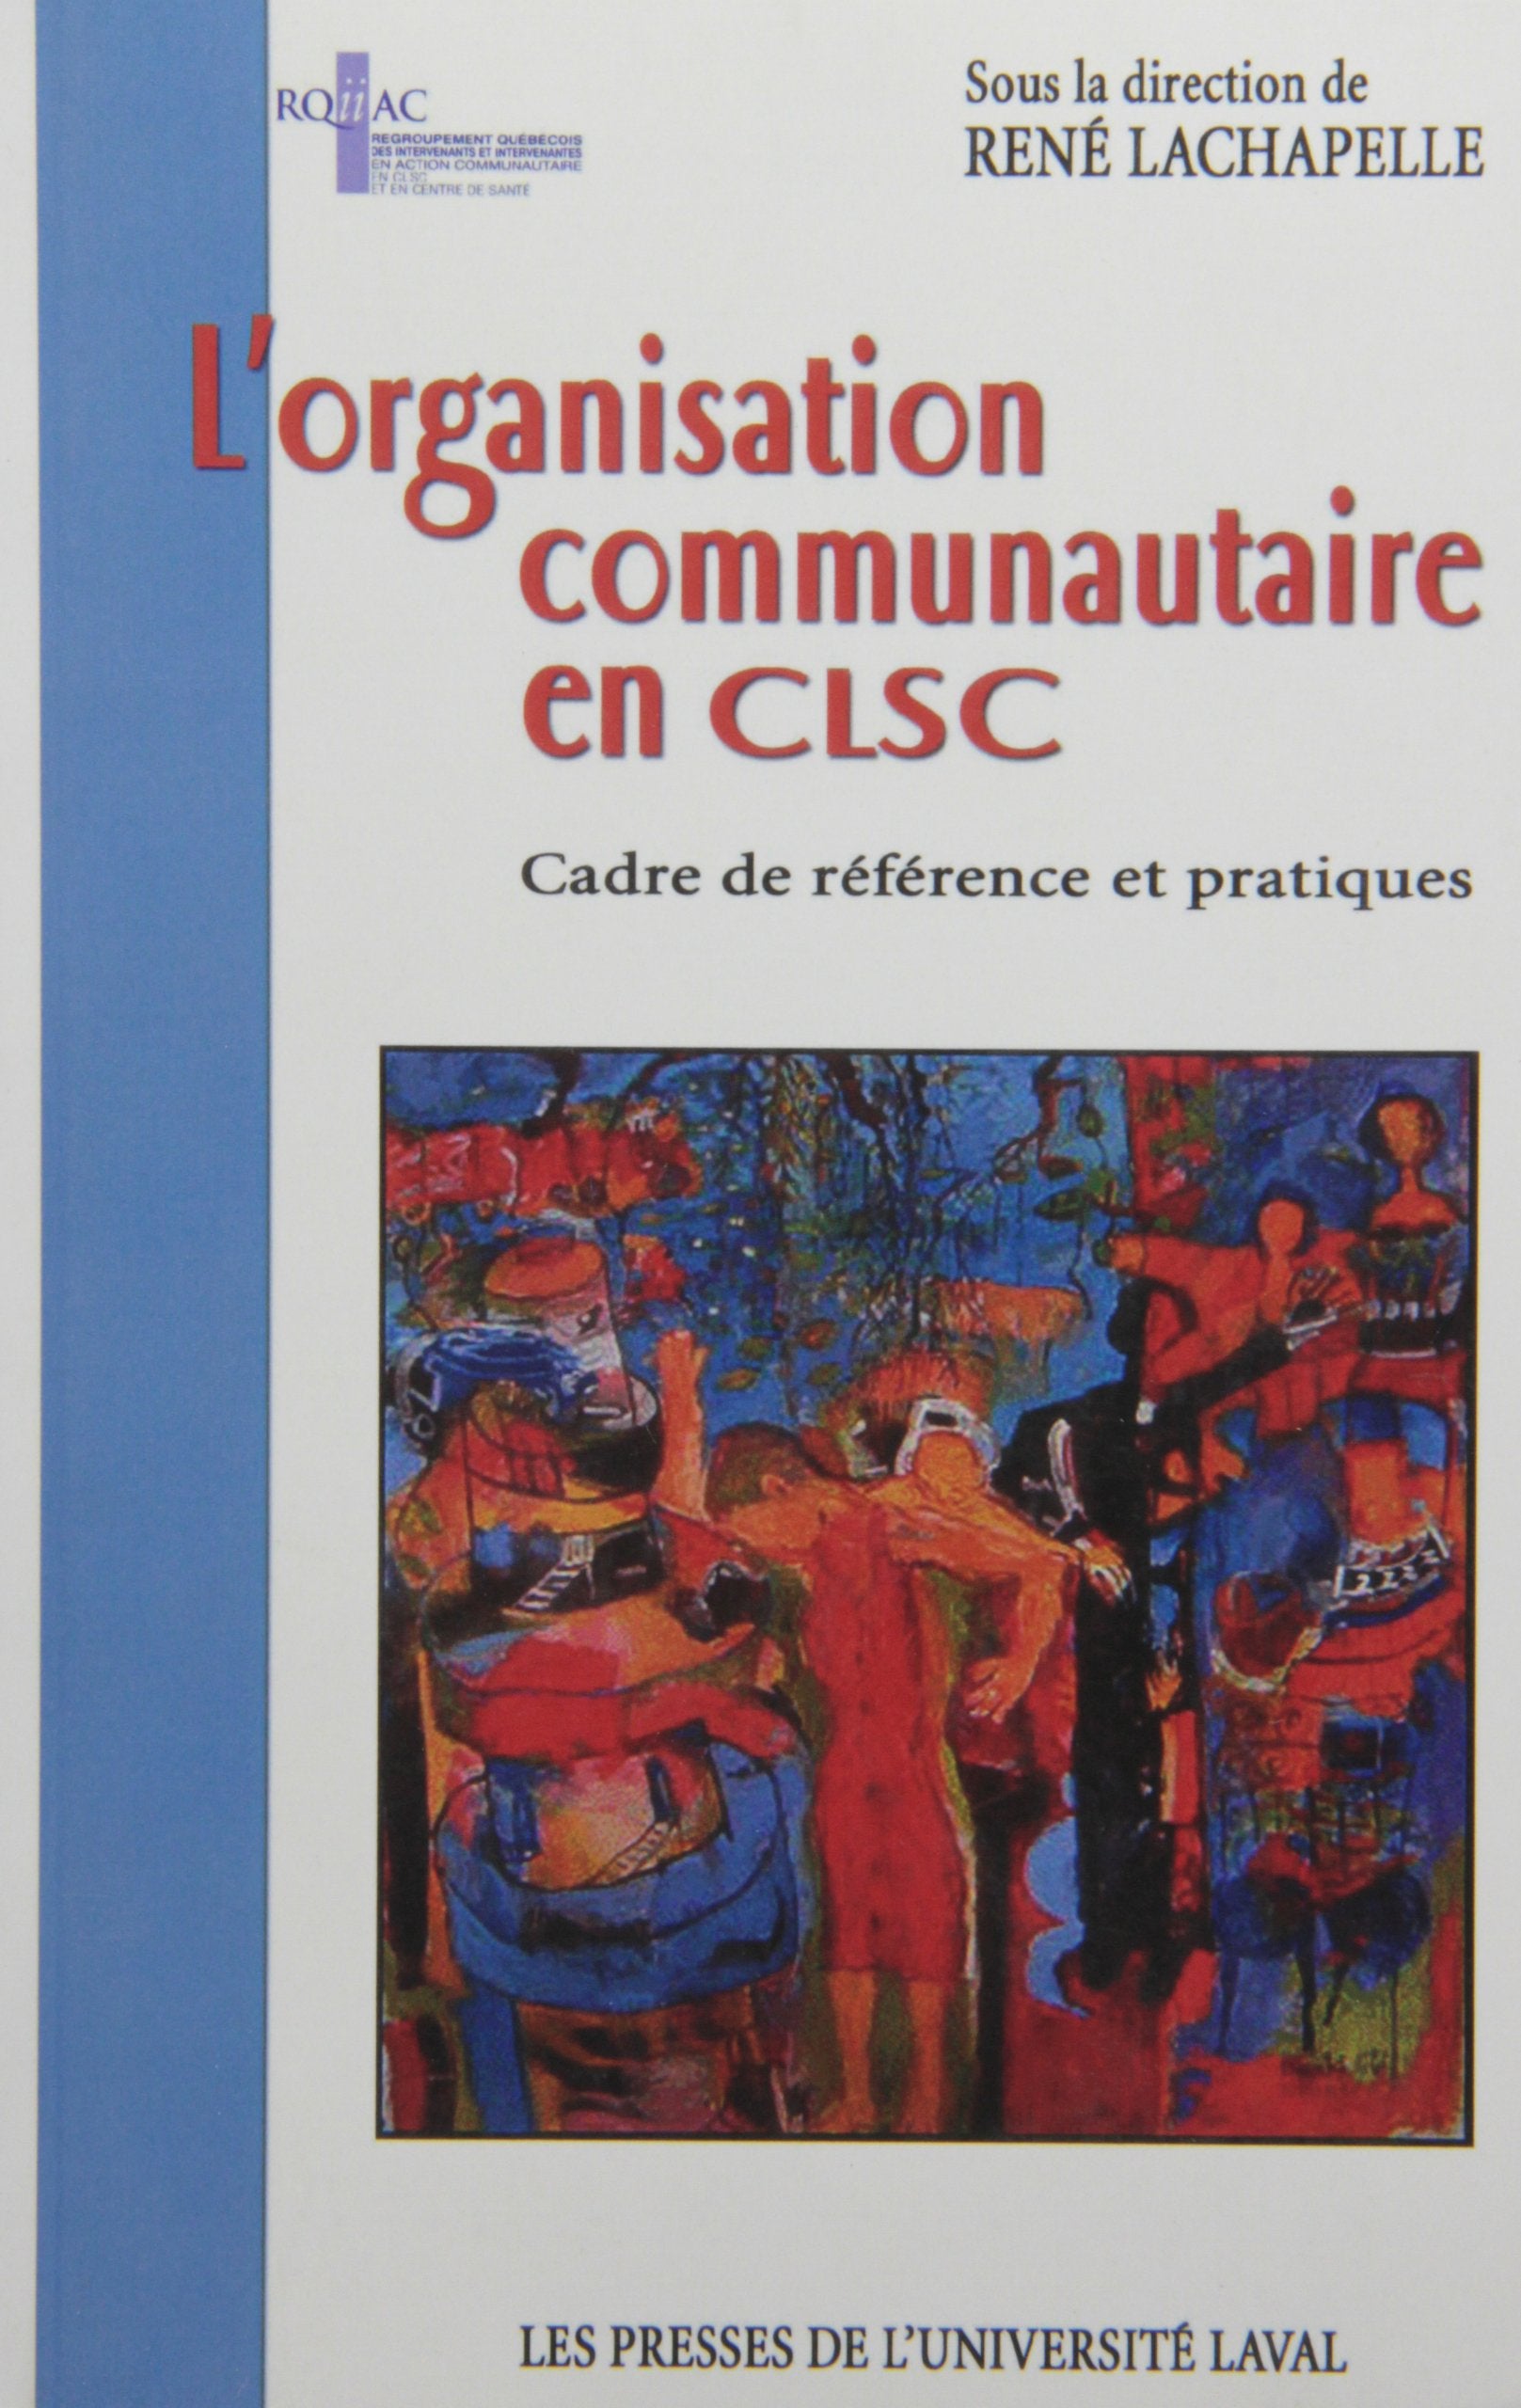 Livre ISBN 2763779794 L'organisation communautaire en CLSC : cadre de référence et pratique (René Lachapelle)